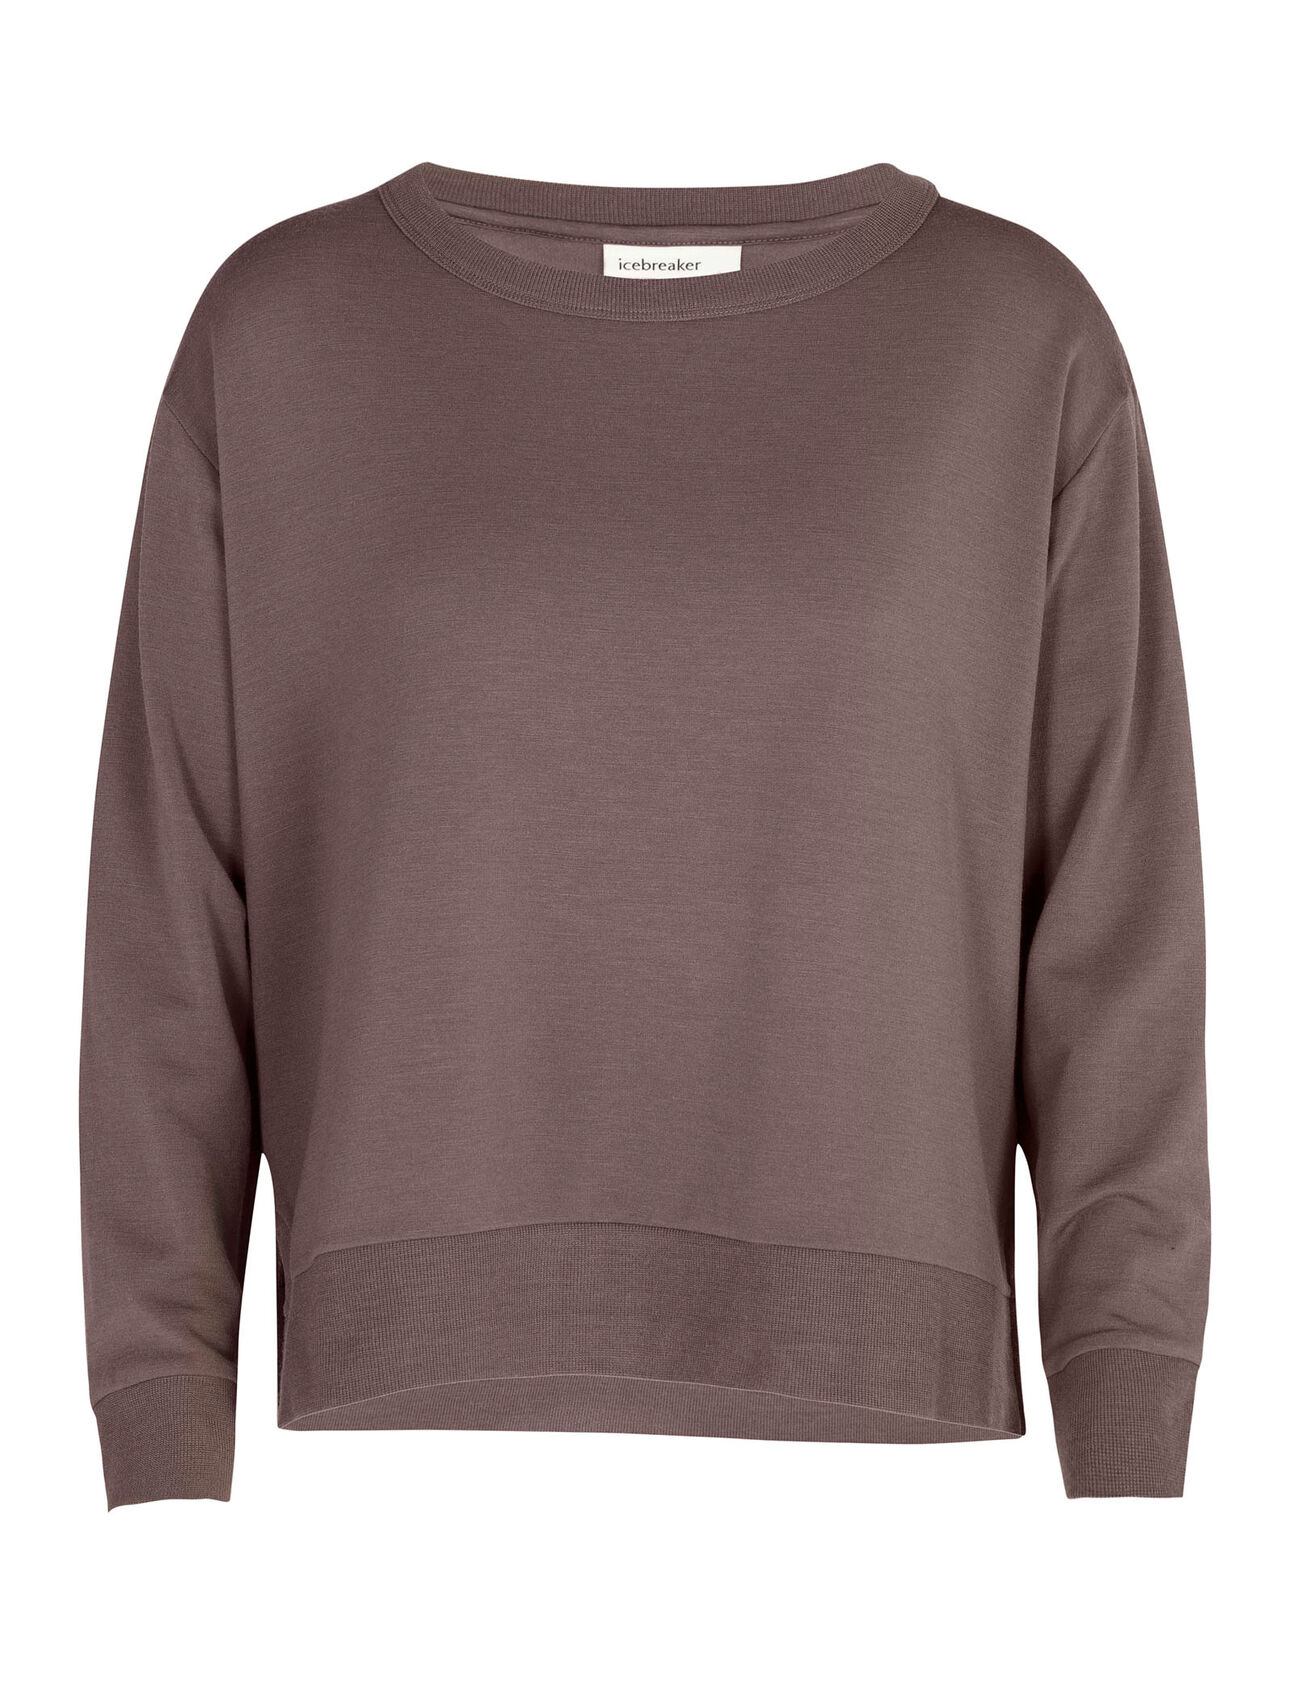 RealFleece™ Merino Dalston Long Sleeve Sweatshirt